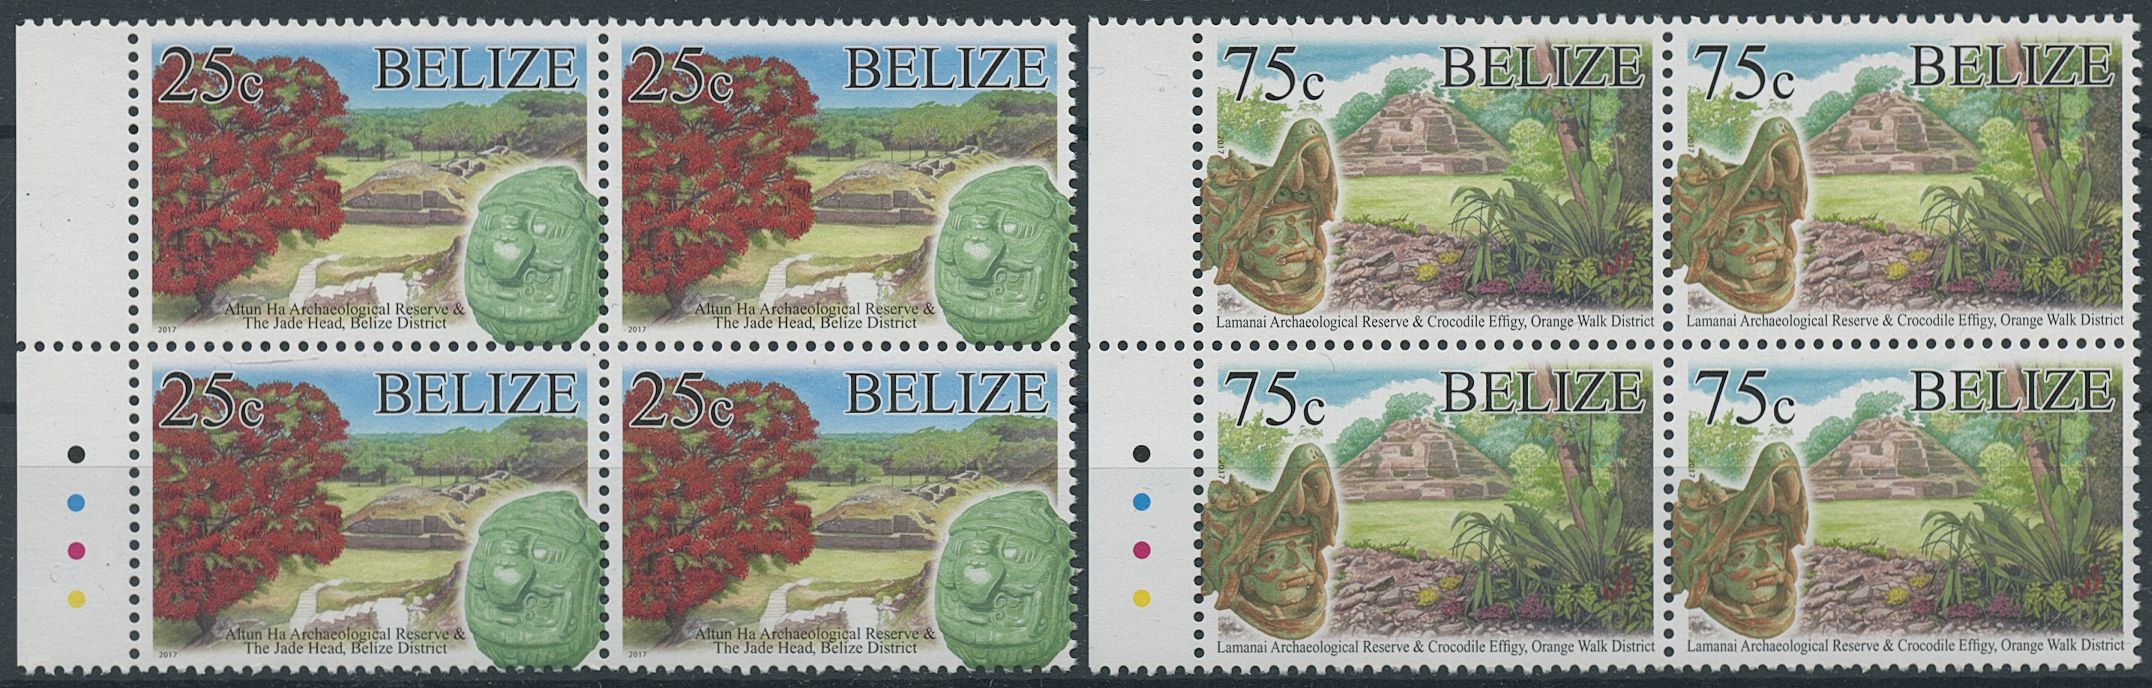 Belize 2017 MNH Landscapes Stamps Tourism Definitines R/P Trees Nature 2v Set in Blocks